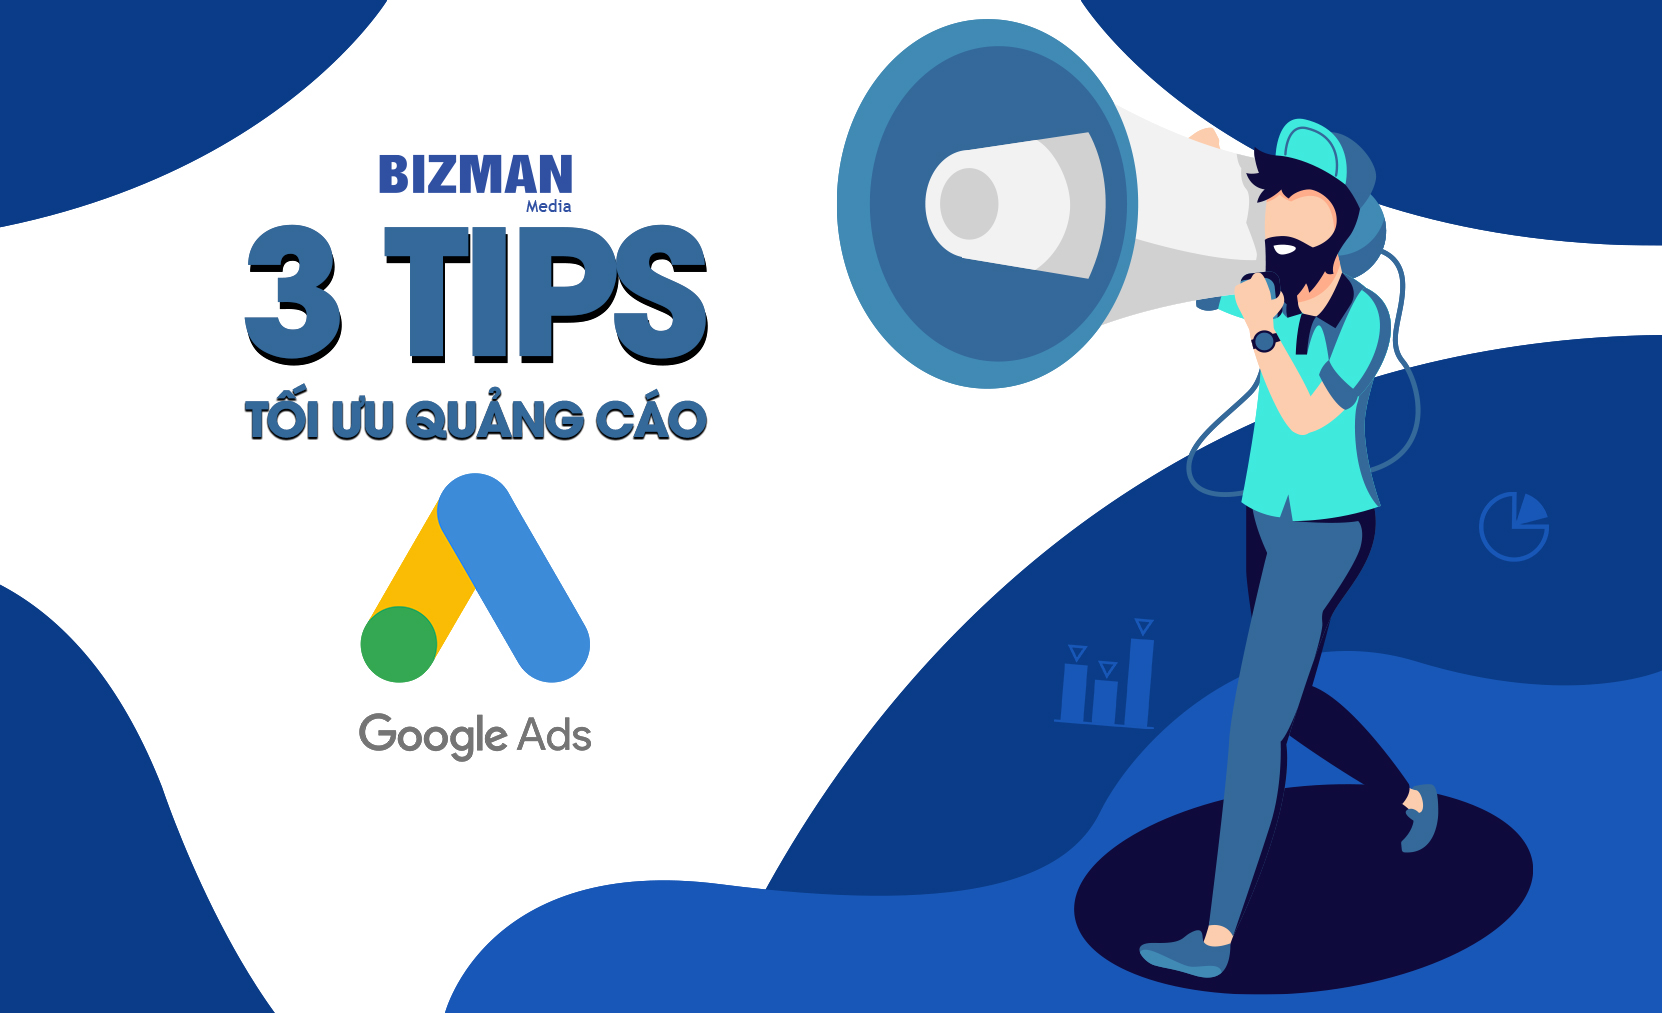 Tối ưu quảng cáo Google cực dễ với 3 tips đơn giản